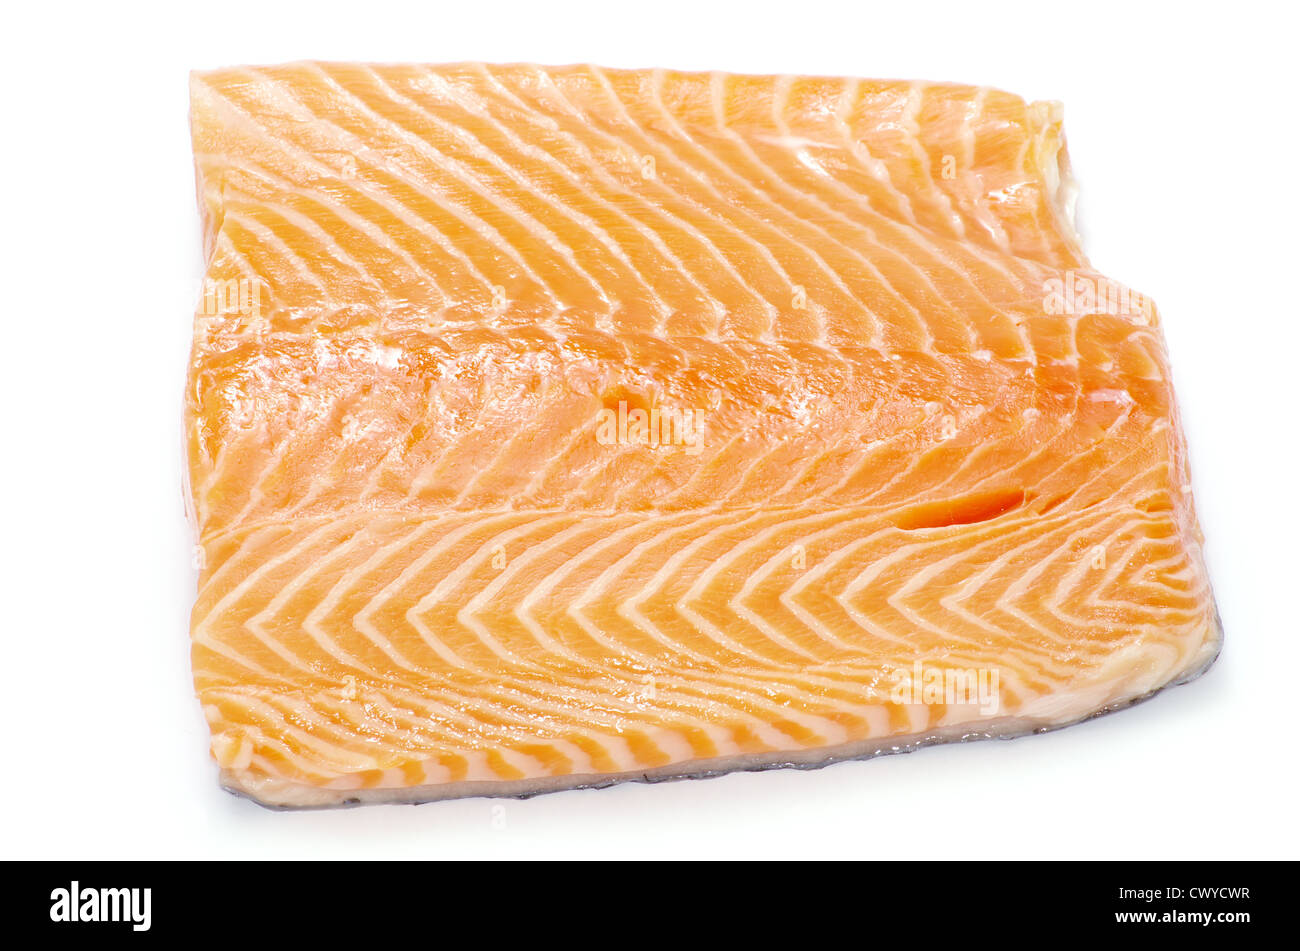 salmon steak red fish on white Stock Photo